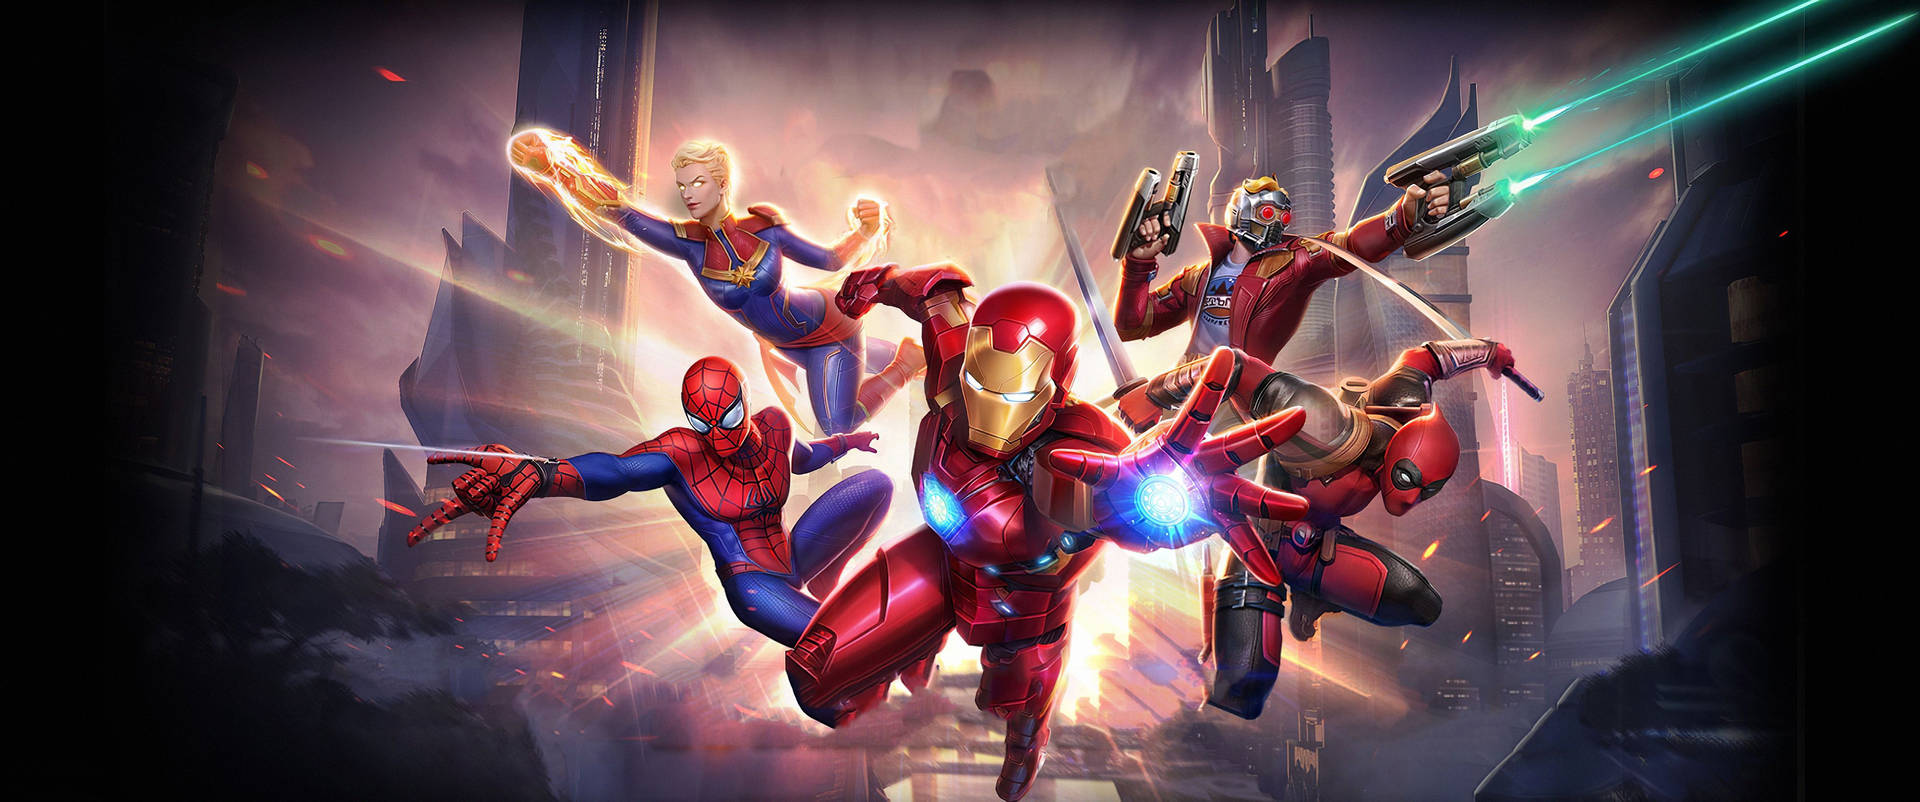 4k Marvel Heroes Flying Wallpaper